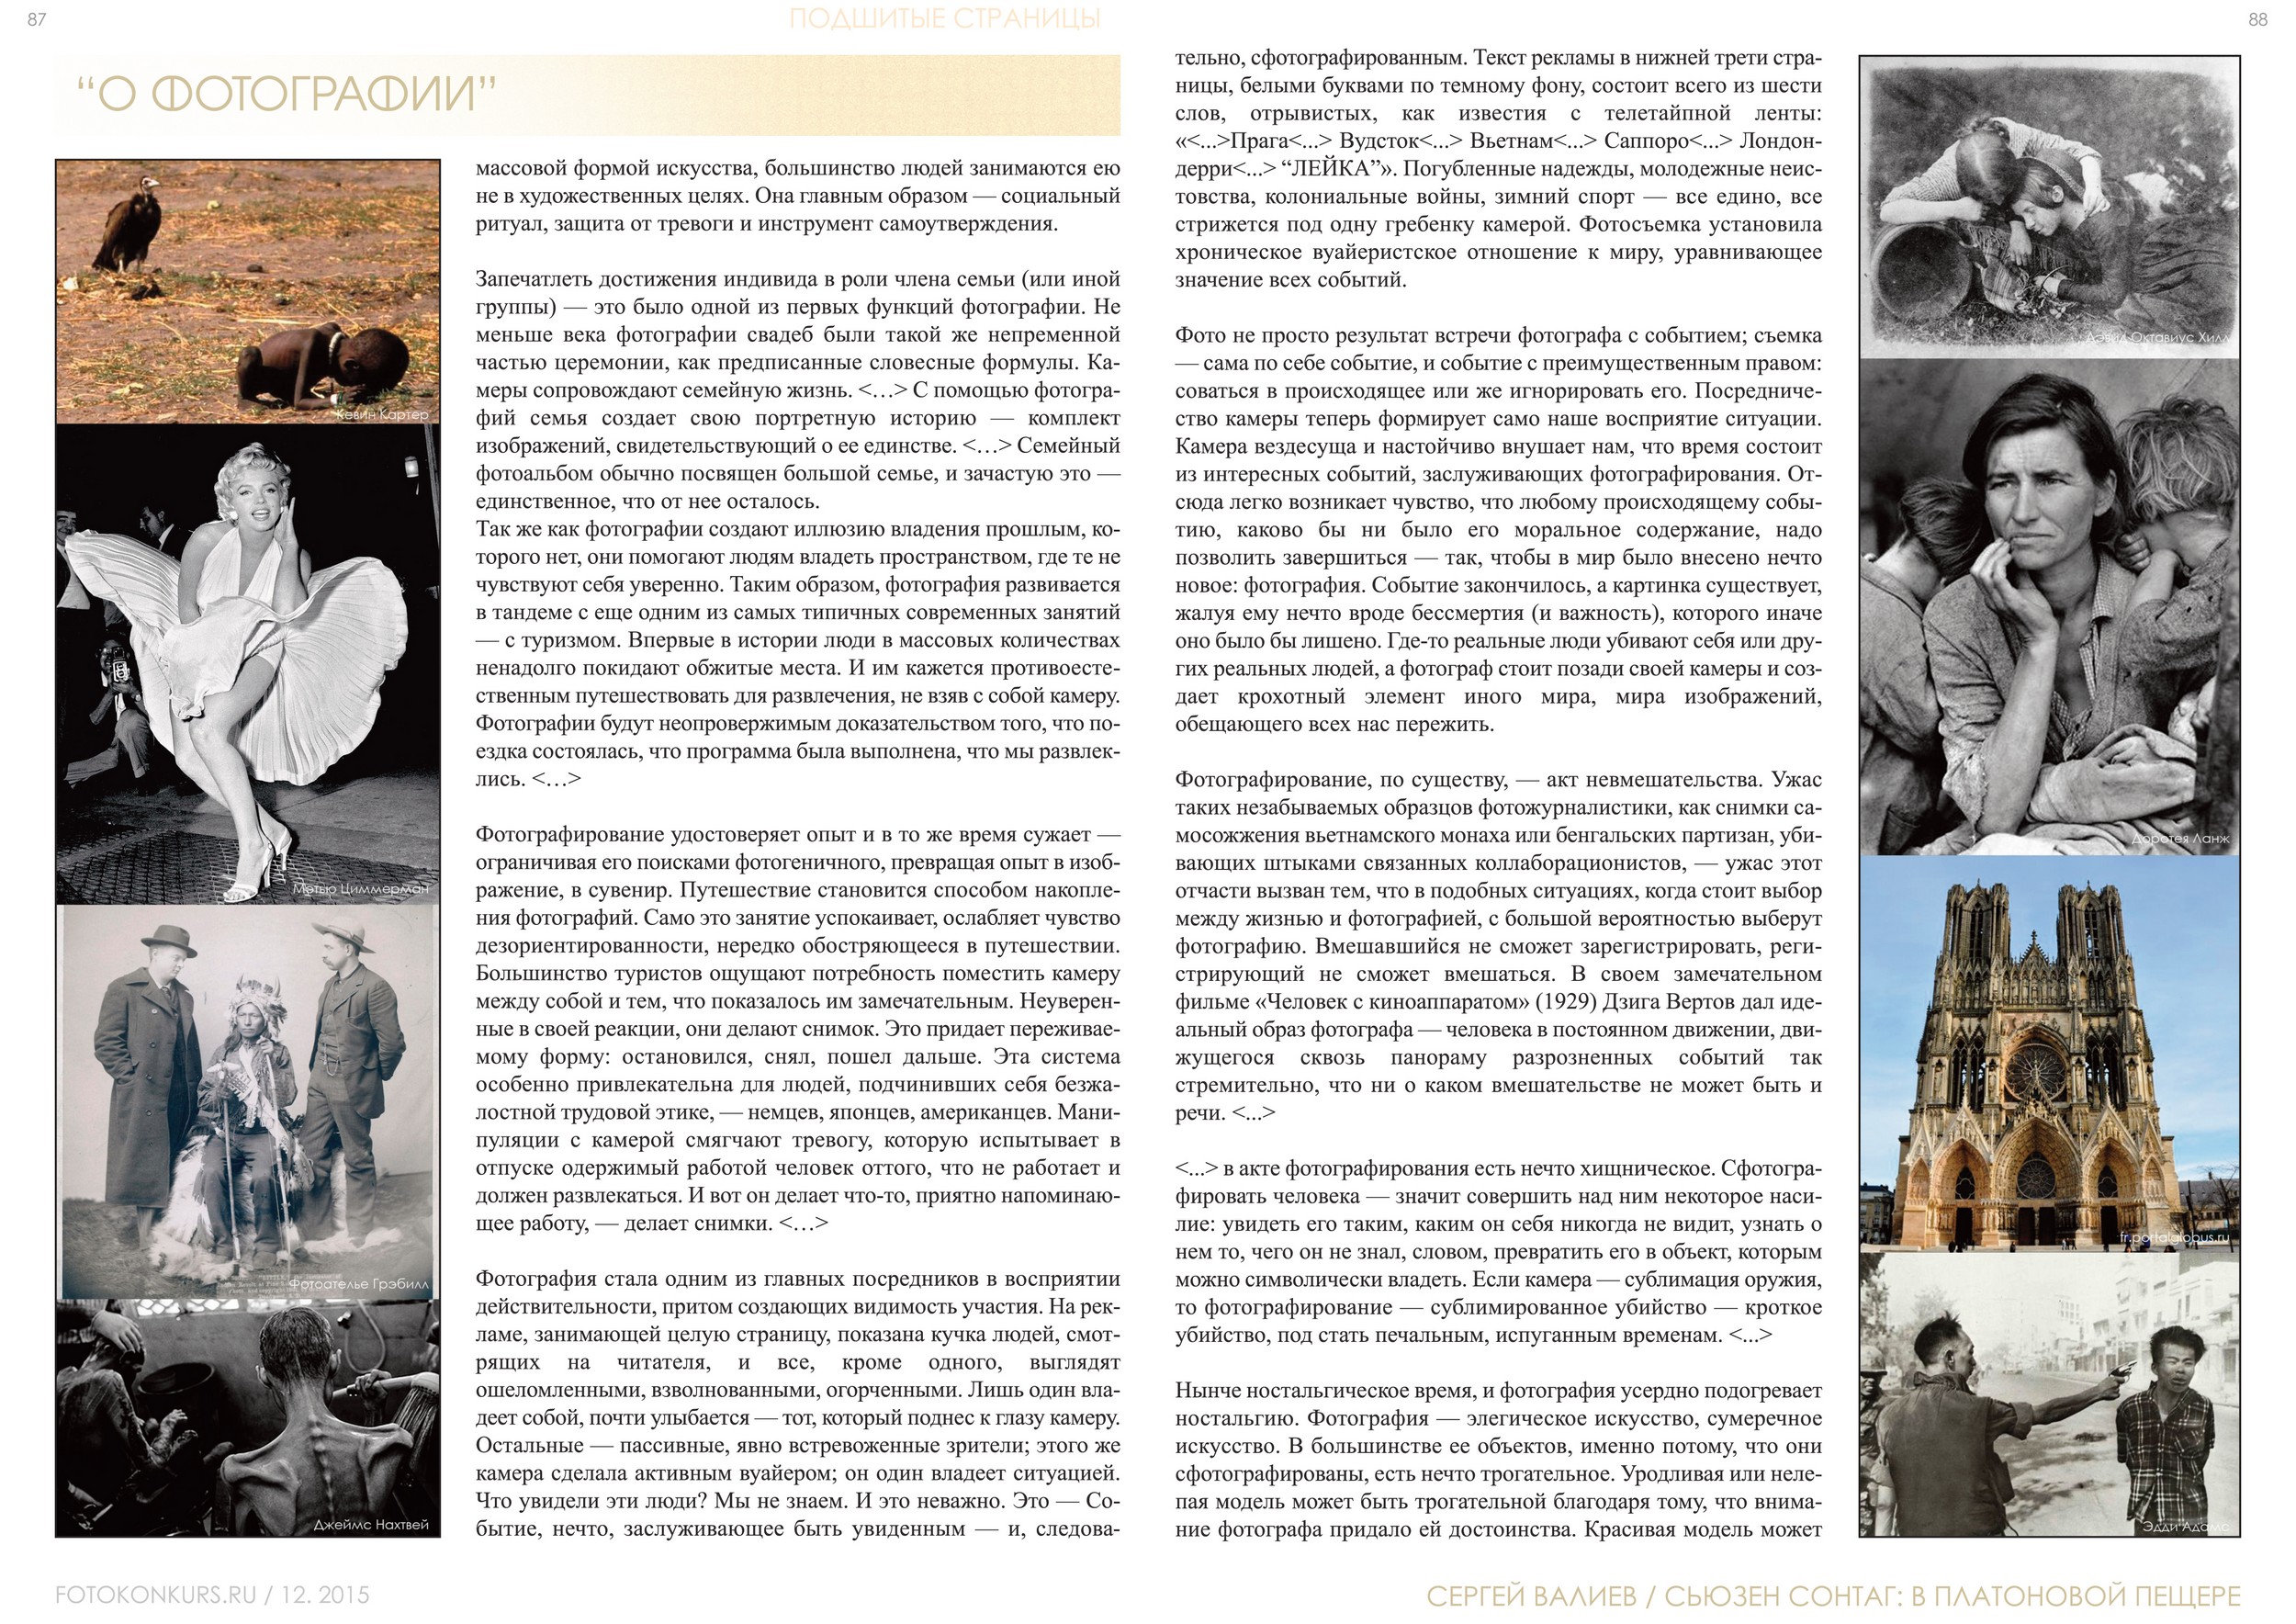 Журнал Фотоконкурс.ру, Выпуск 2, декабрь-2015, страница 87-88